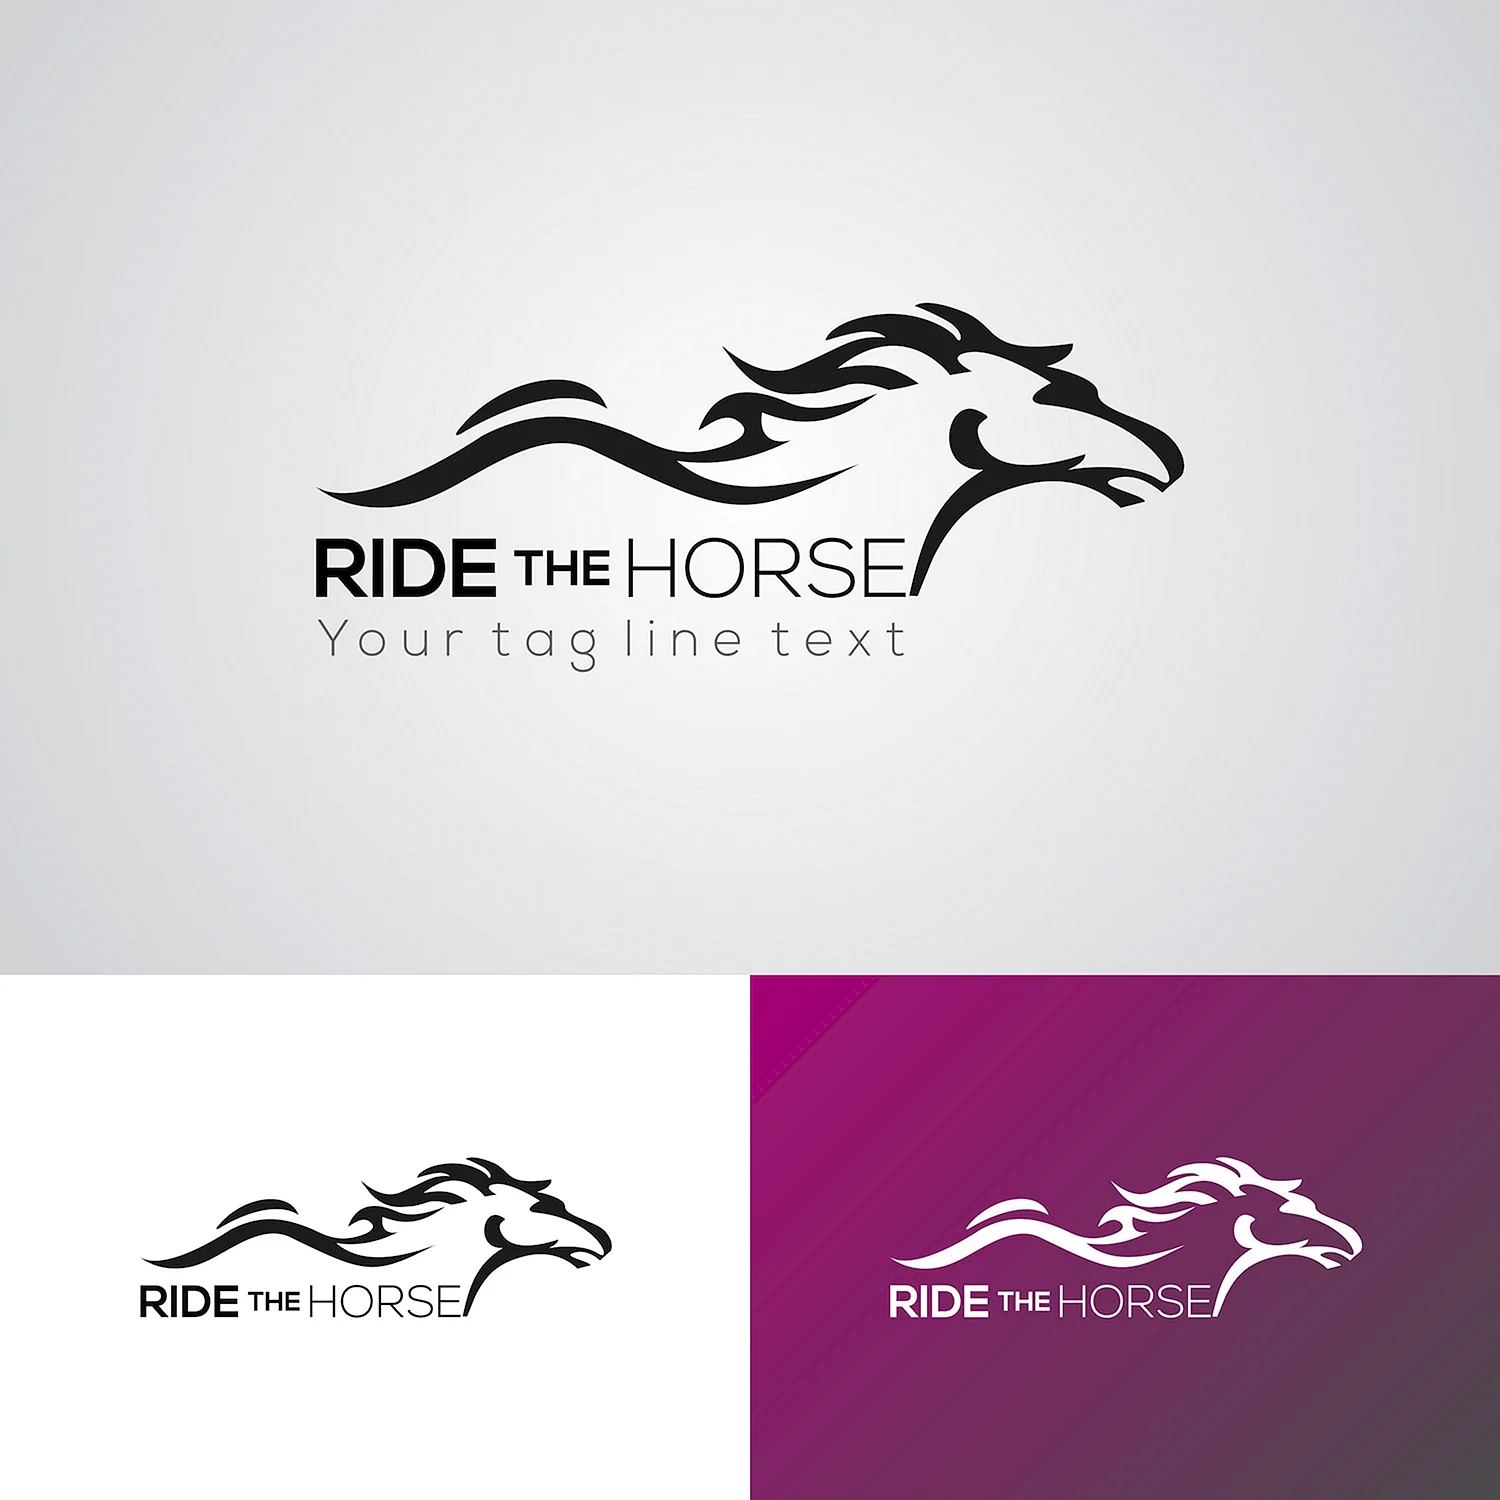 Horse элементы логотип